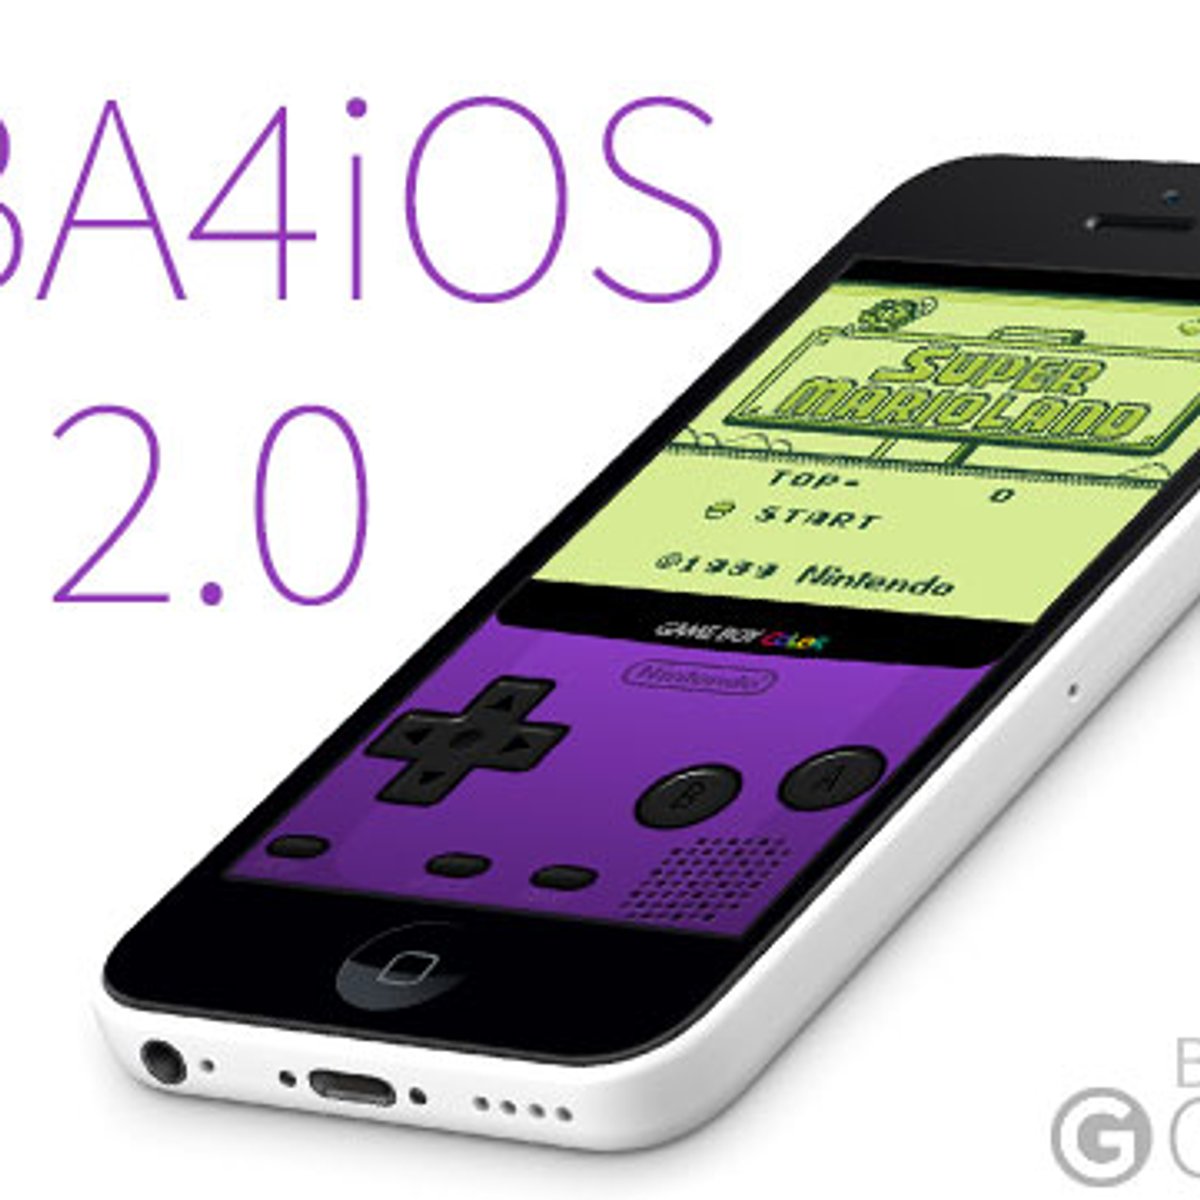 Emulador de Gameboy Advance aterrizará en iOS - iPaderos